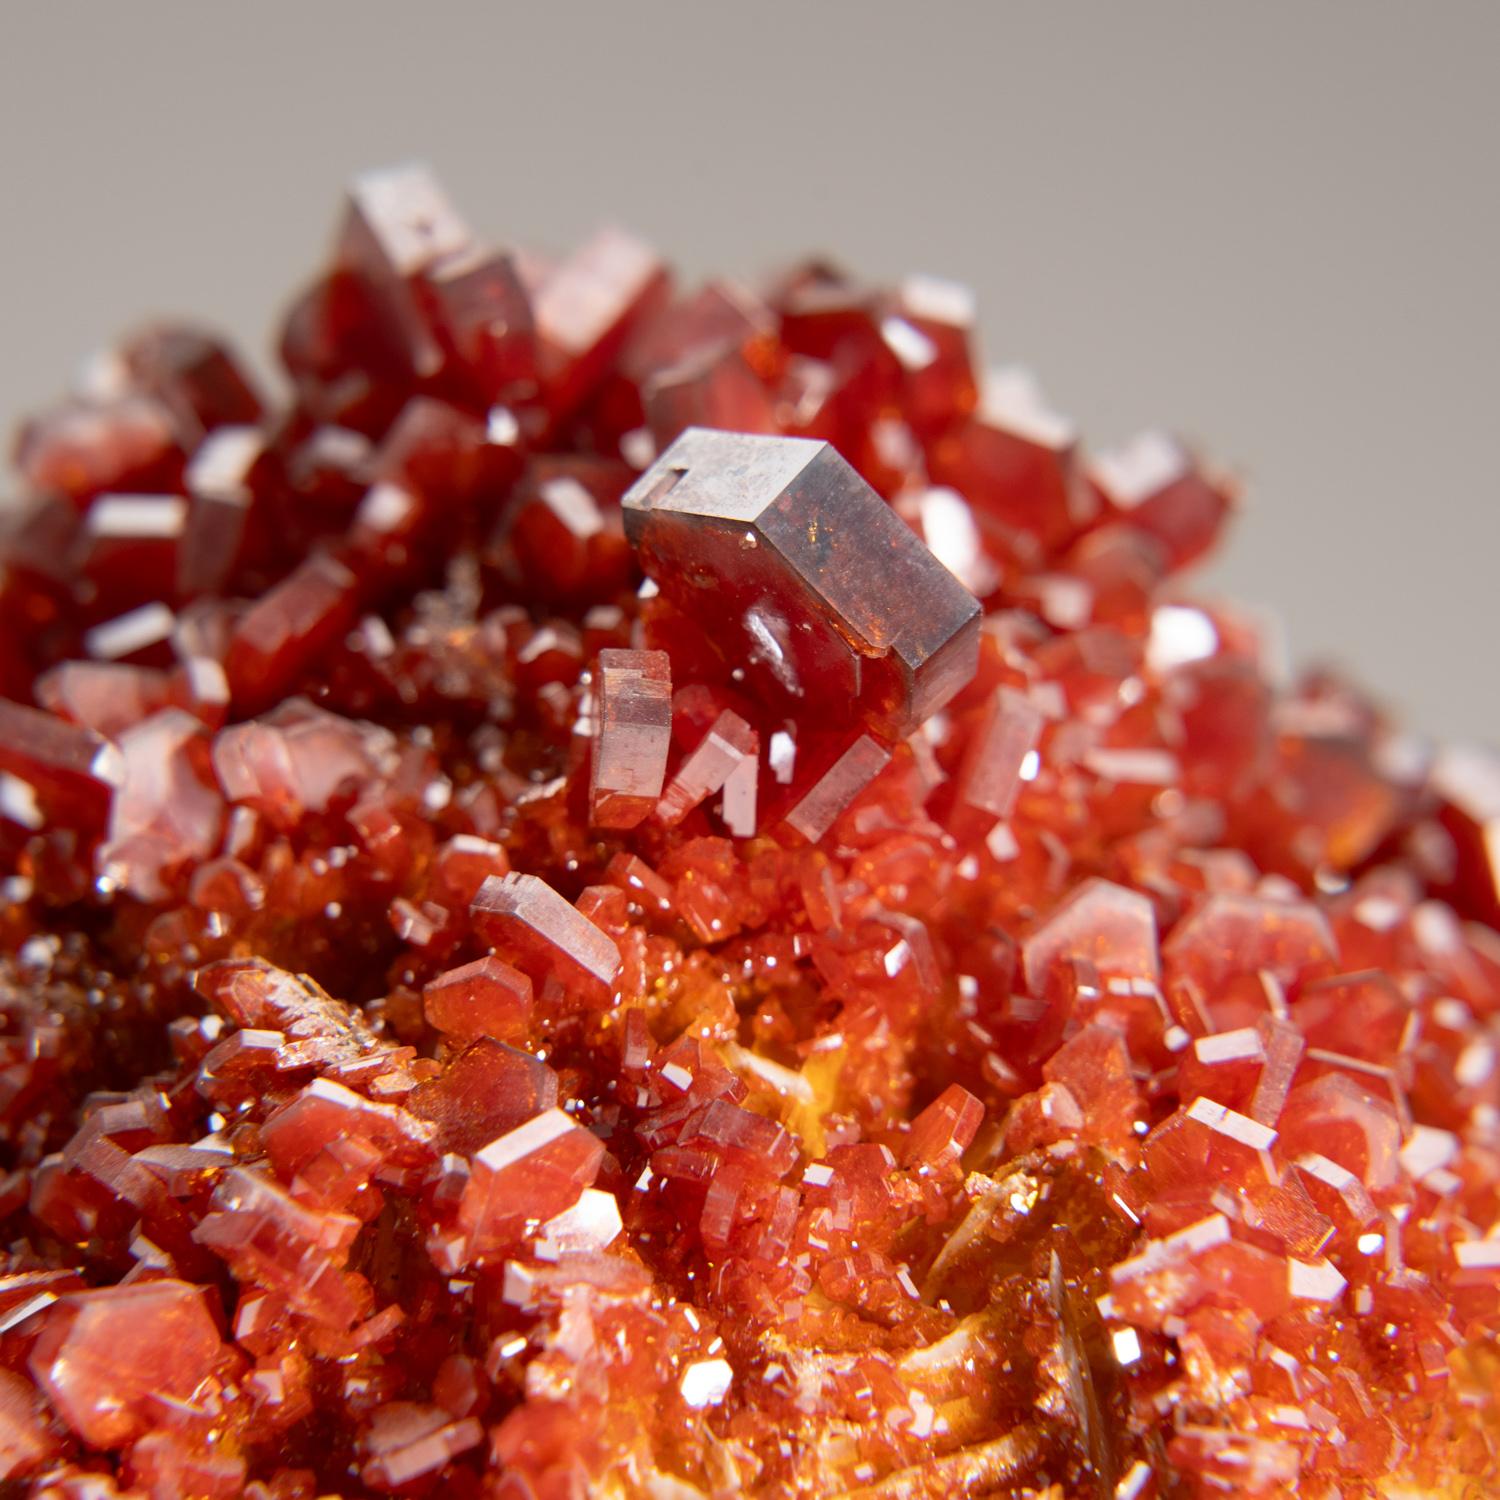 De Mibladen, montagnes de l'Atlas, province de Khénifra, Maroc 

Exceptionnel amas de cristaux hexagonaux de vanadinite rouge brique à l'éclat vitreux sur une matrice de limonite.  Ces grands cristaux bien définis et intacts sont entièrement